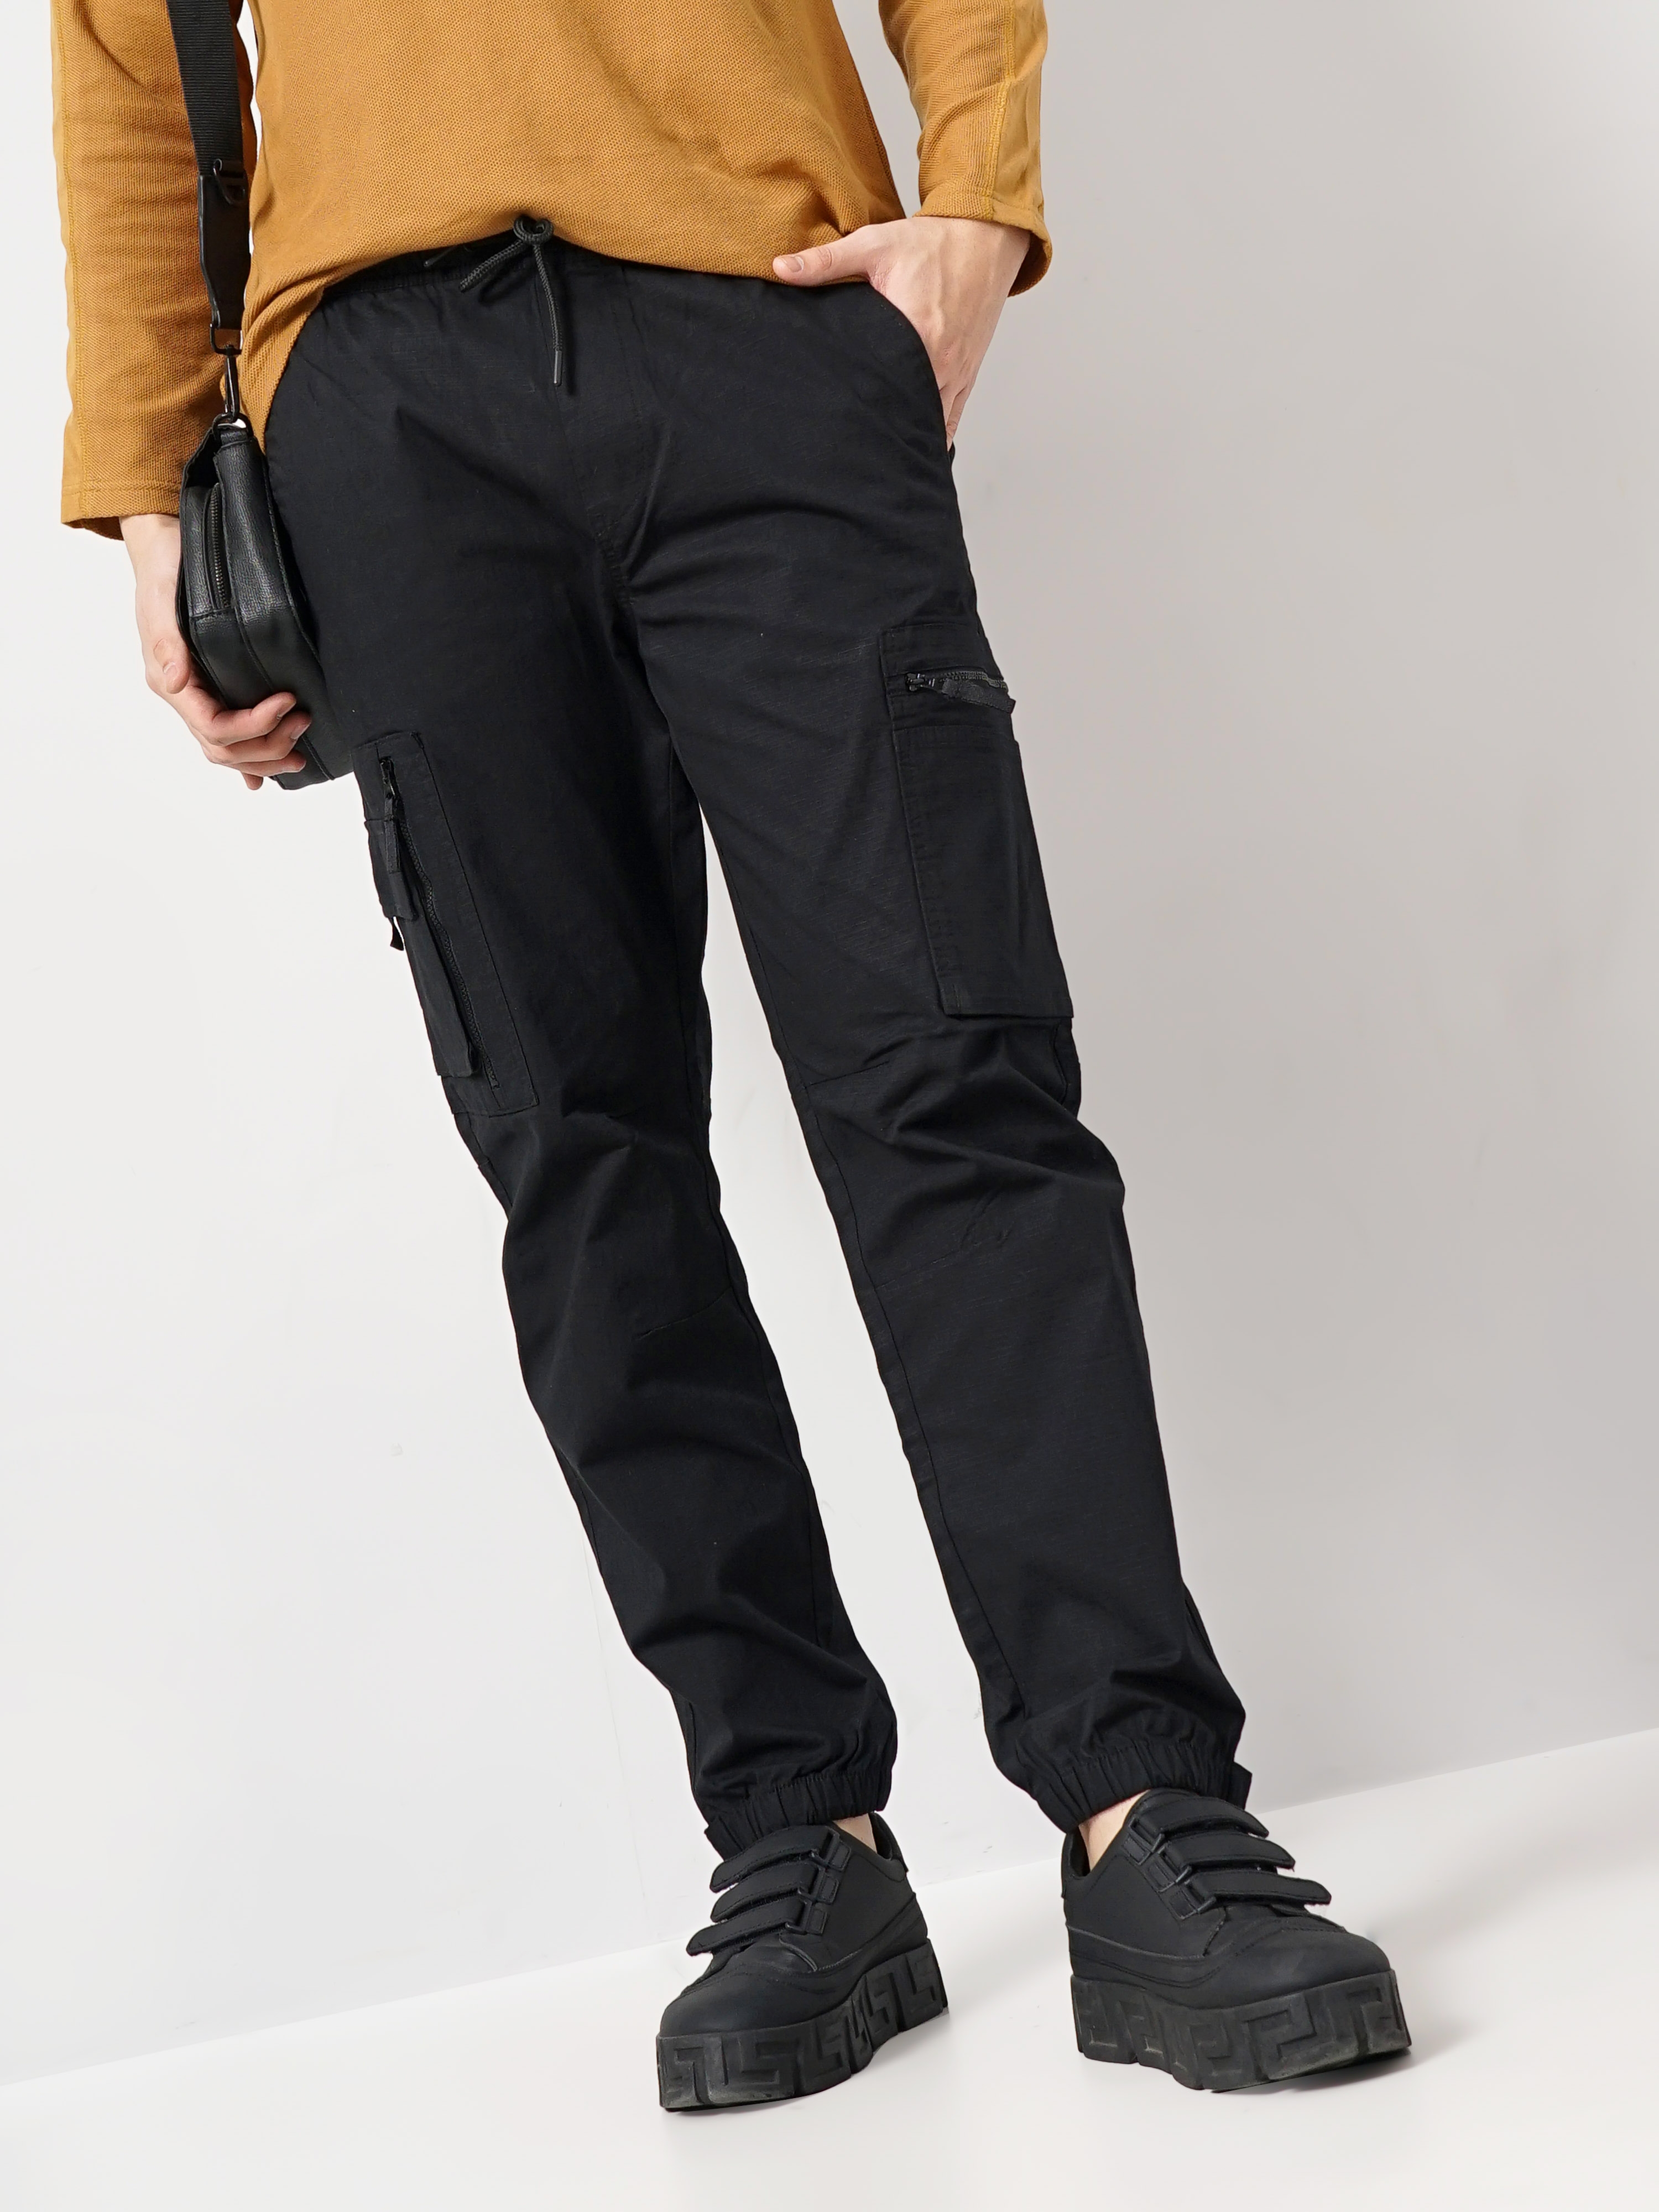 Linen Men's Casual Trousers Lounge Pants – Linenshed